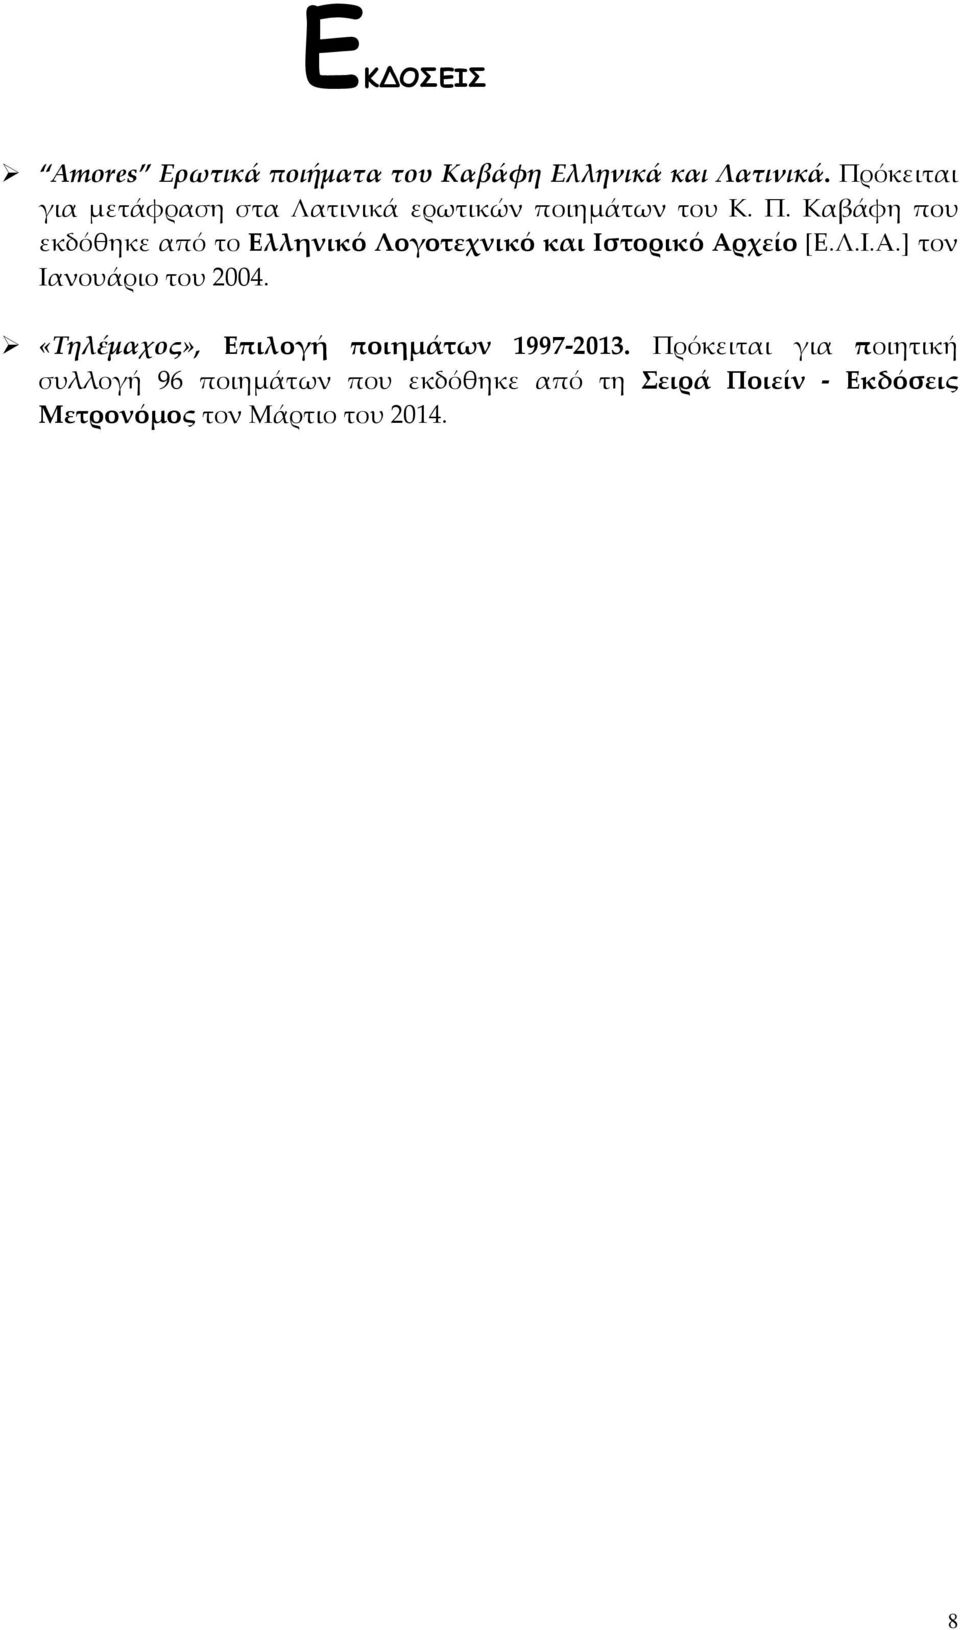 Καβάφη που εκδόθηκε από το Ελληνικό Λογοτεχνικό και Ιστορικό Αρχείο [Ε.Λ.Ι.Α.] τον Ιανουάριο του 2004.